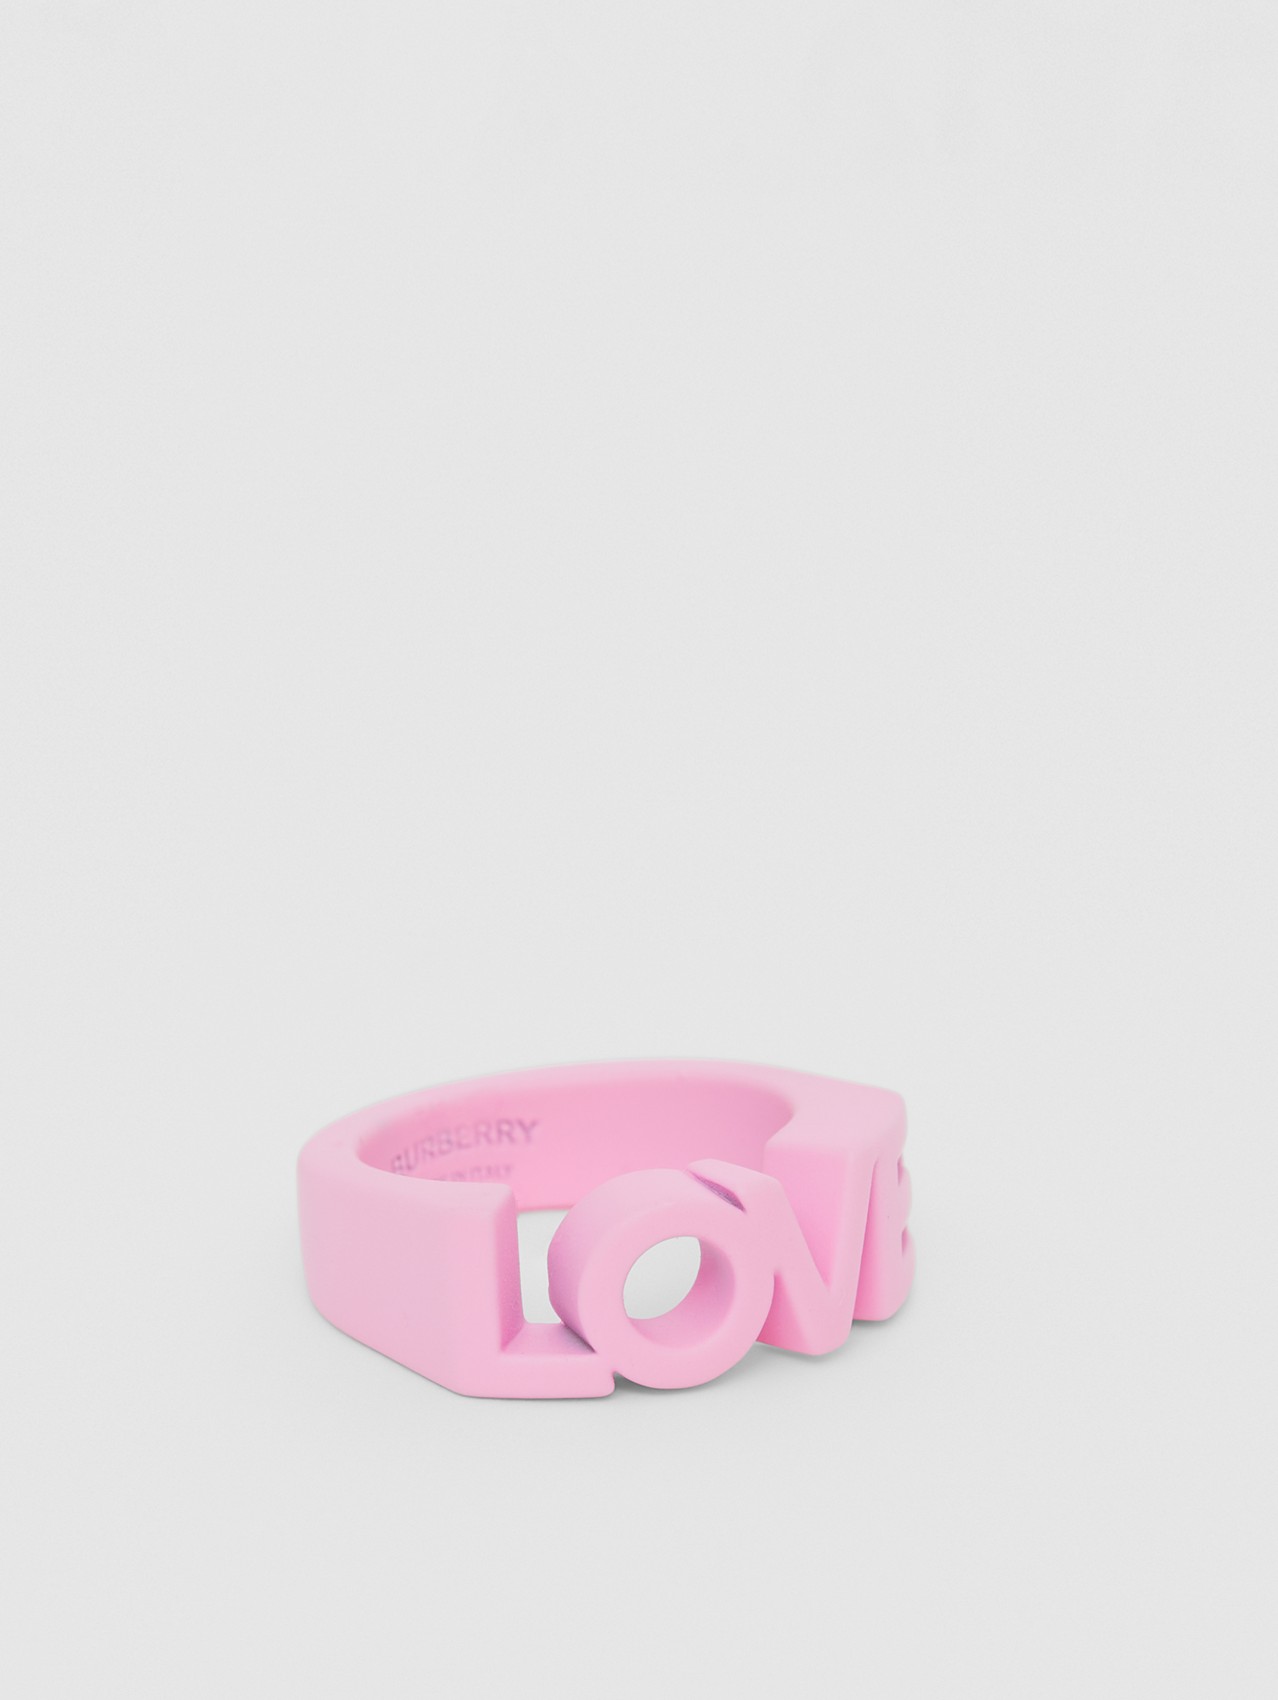 Кольцо Love с лакированным покрытием in Розовая Примула